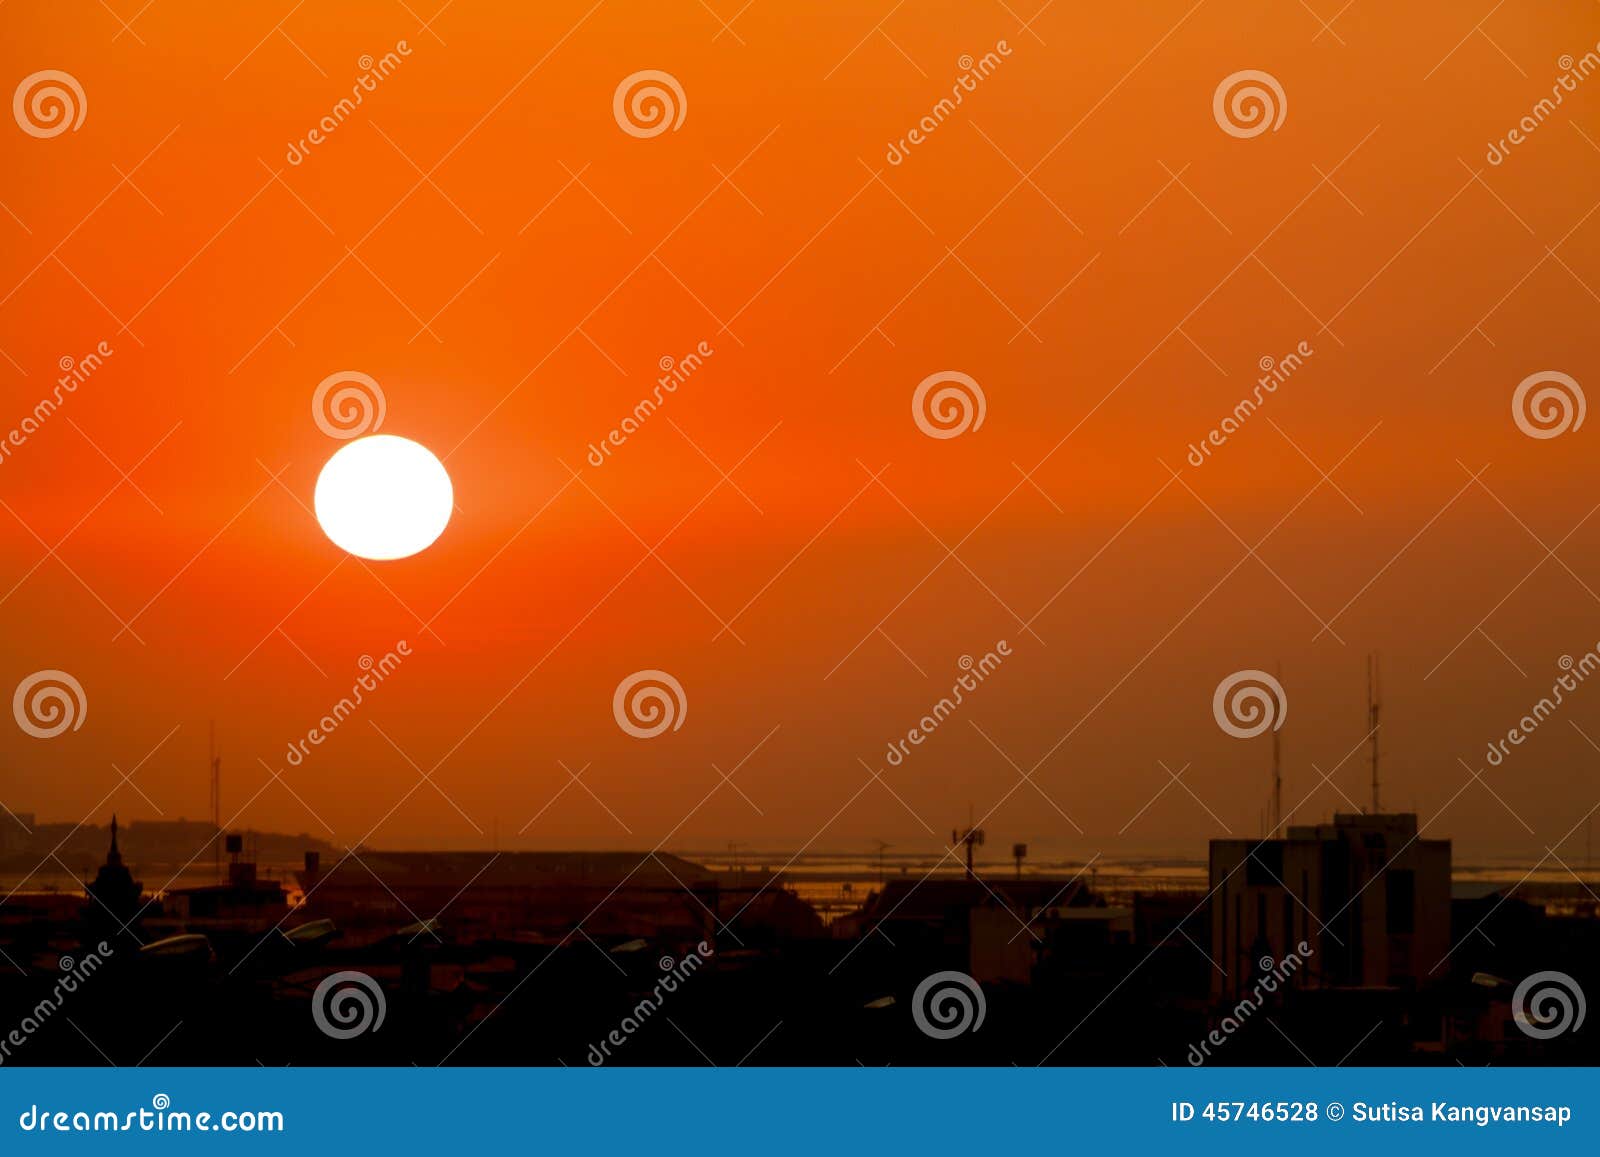 Orange sunset stock photo. Image of view, light, sunrise - 45746528